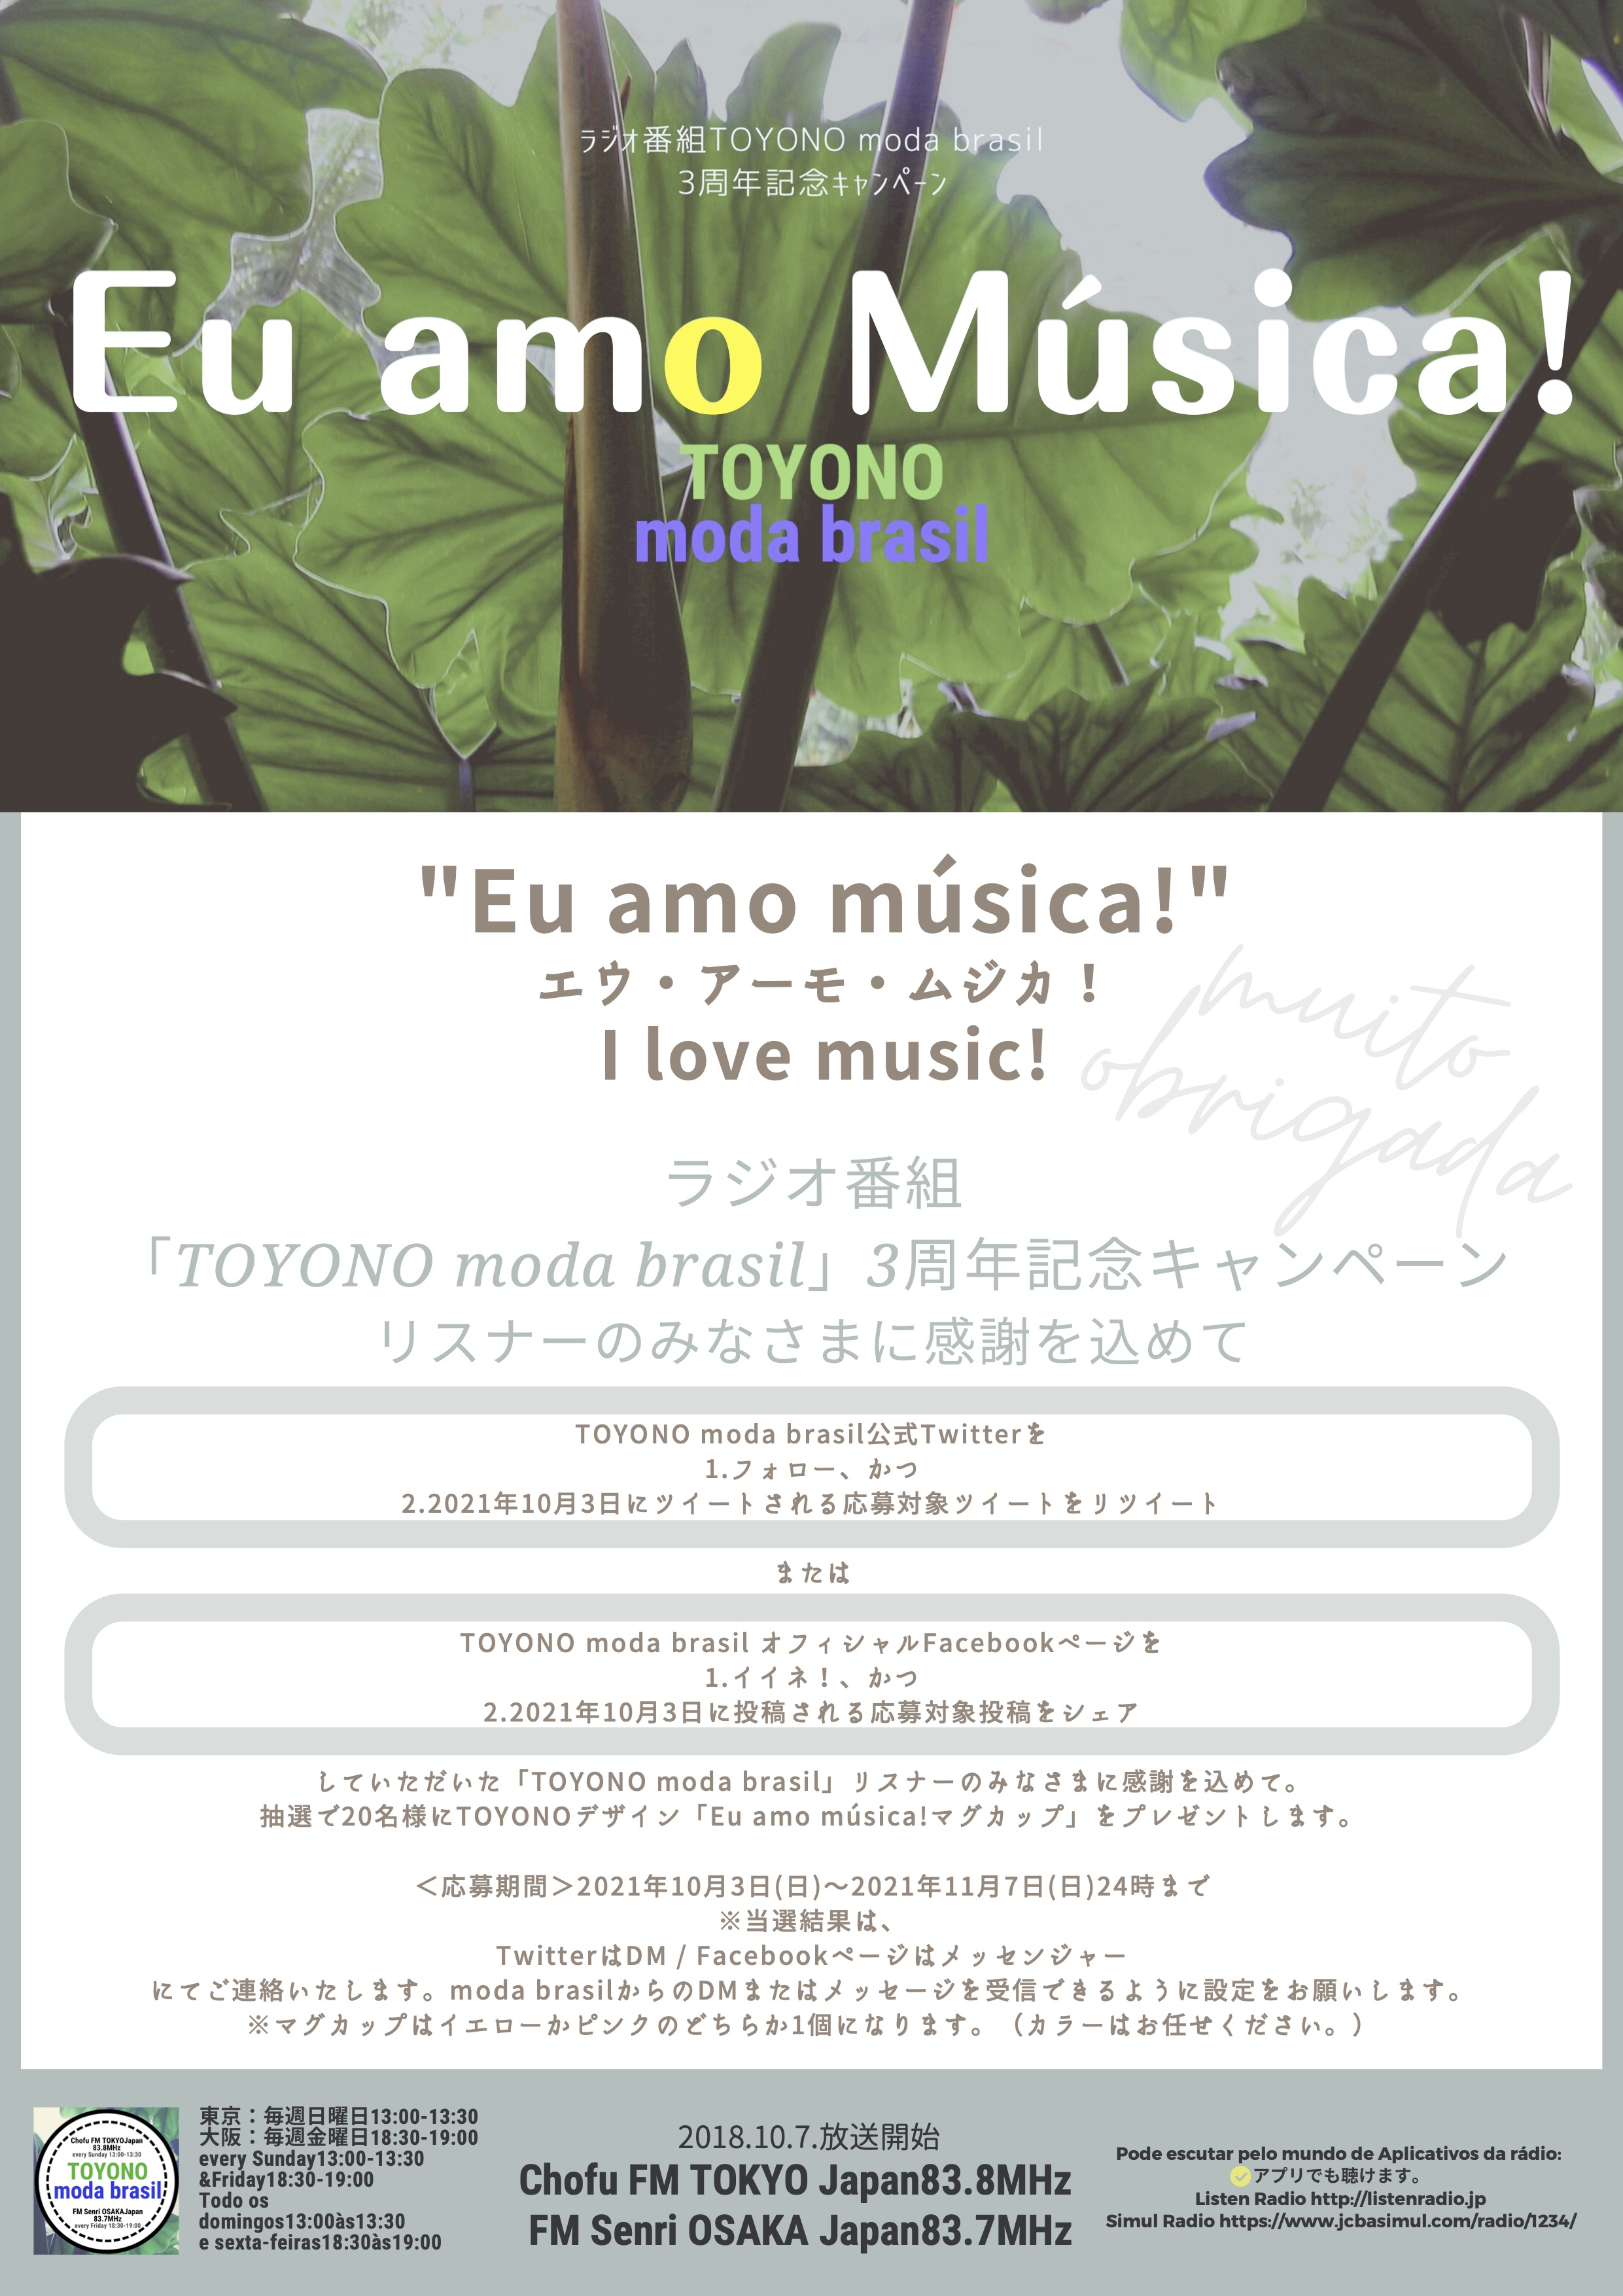 【TOYONO moda brasil3周年記念キャンペーン「Eu amo música!」】